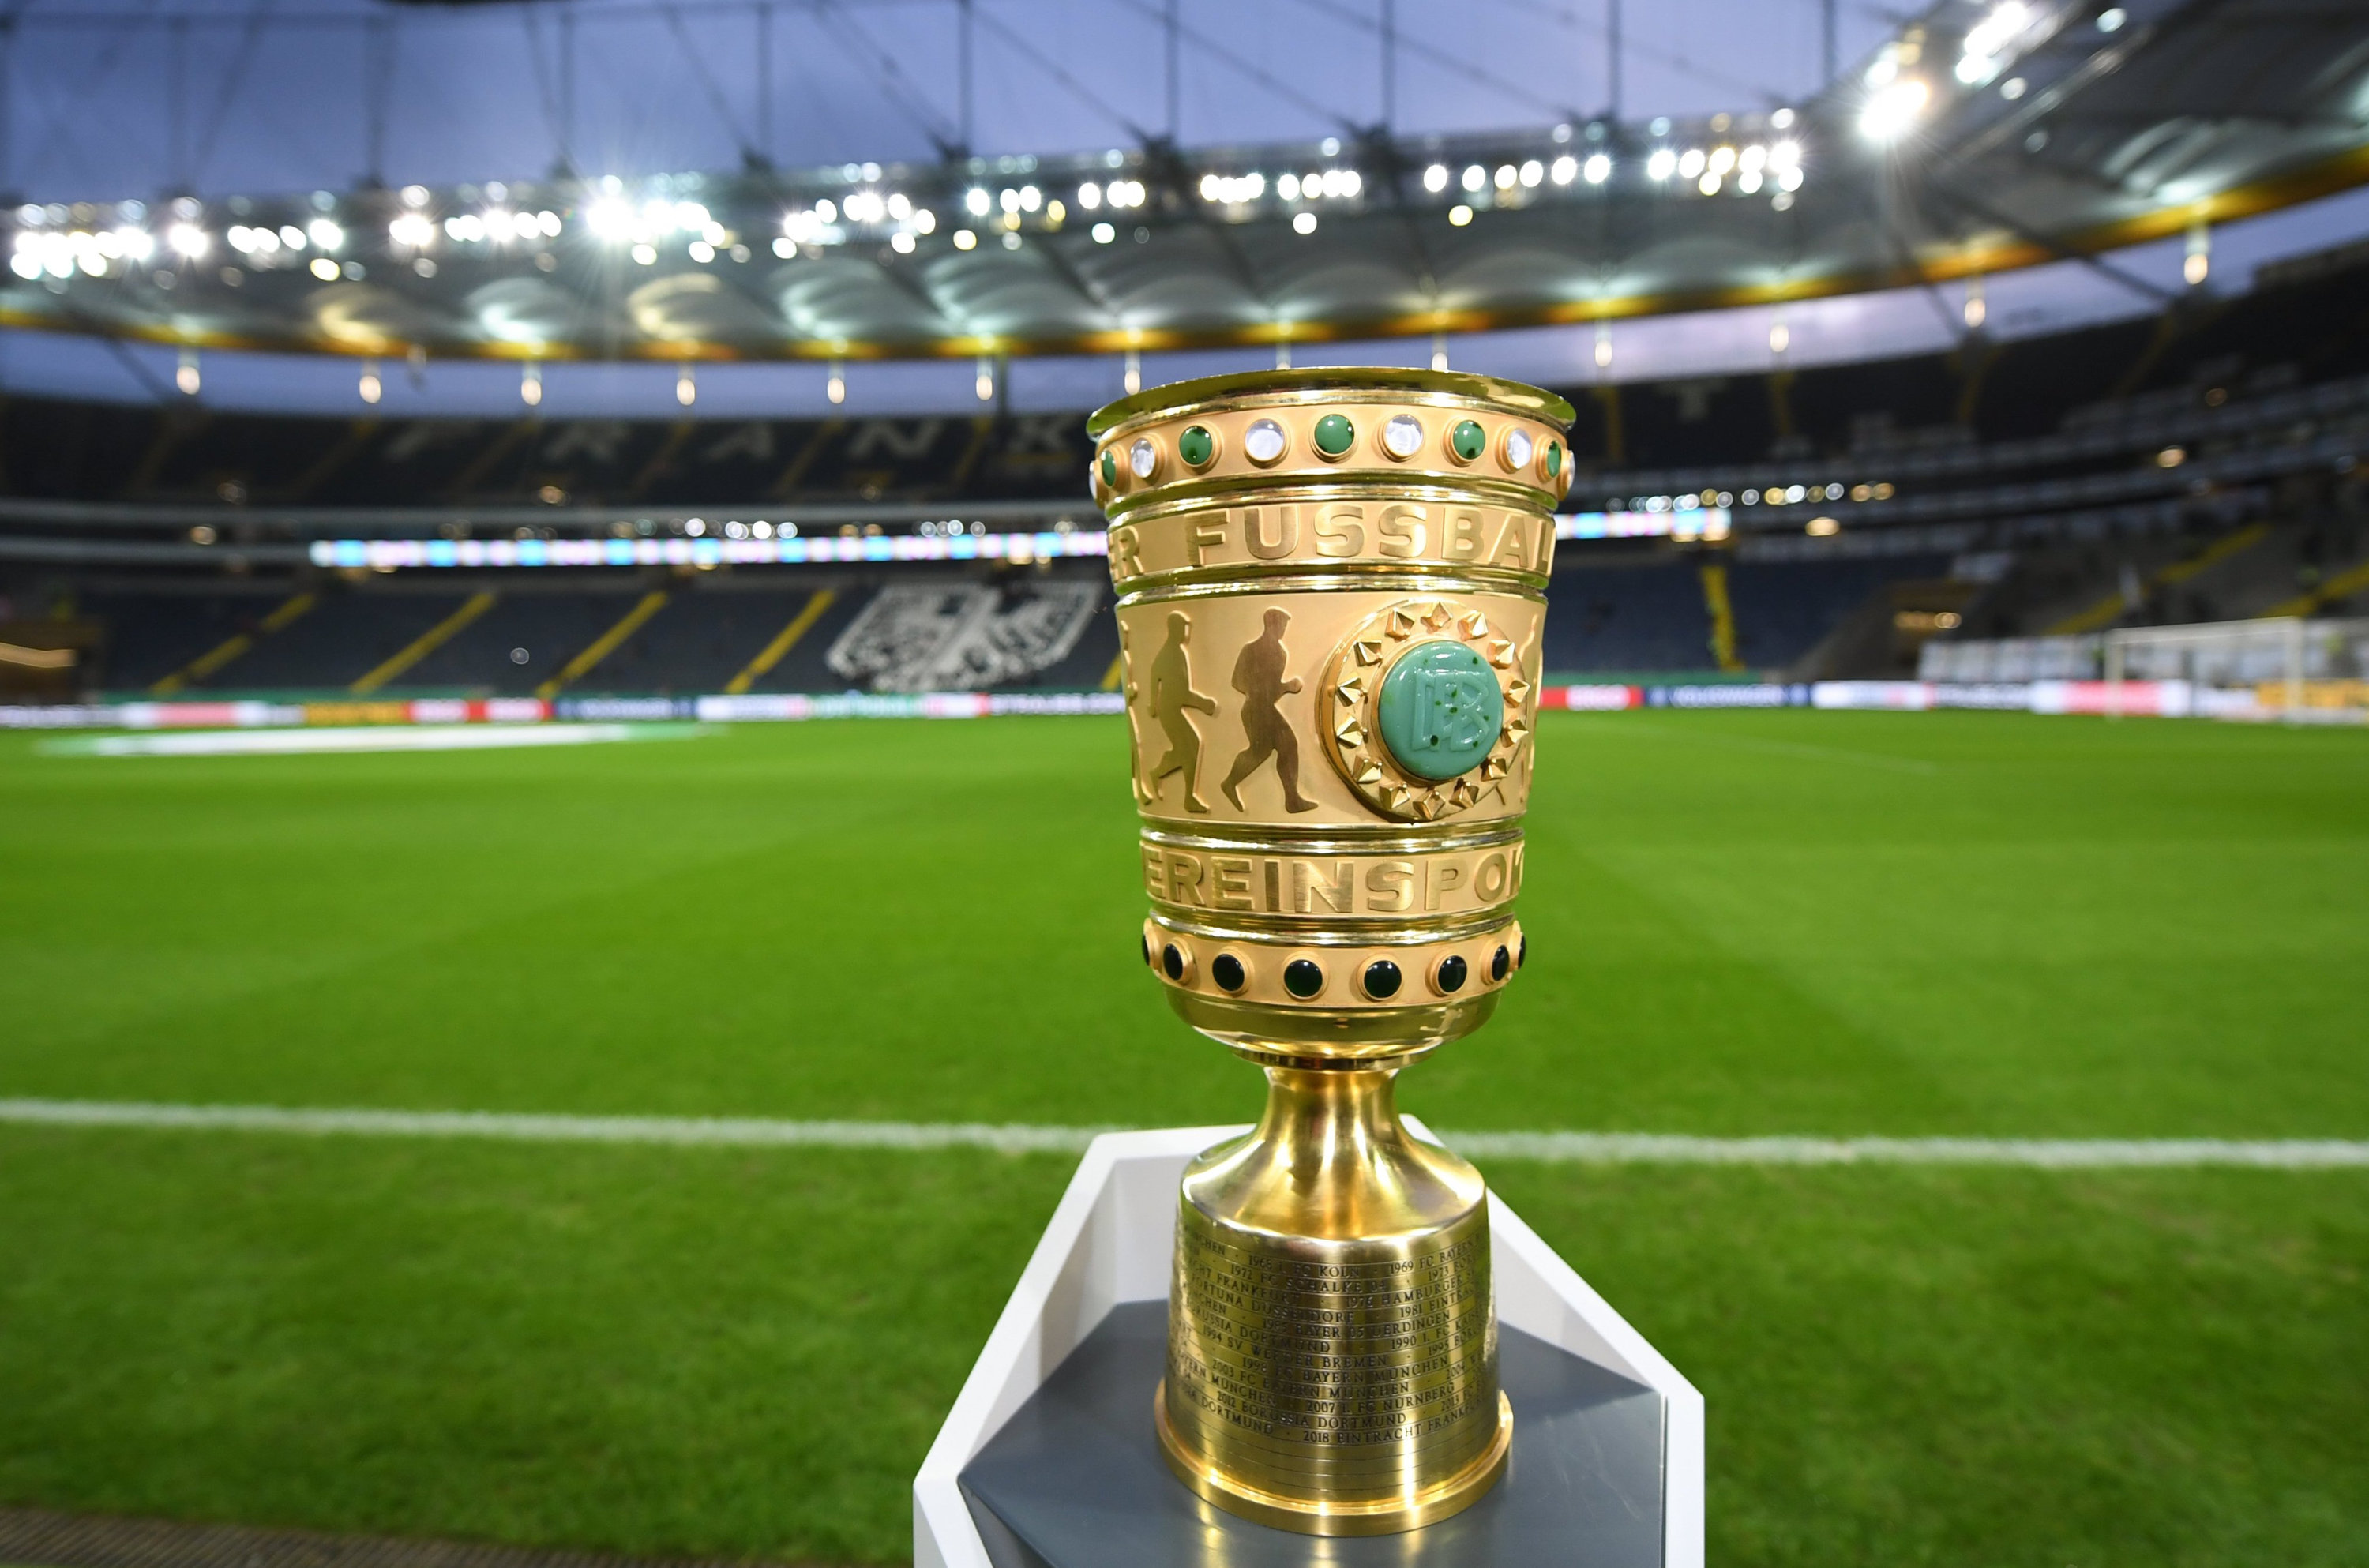 Vergabe vertagt: Der DFB-Pokalsieger soll im Juli ermittelt werden. Foto dpa/Dedert